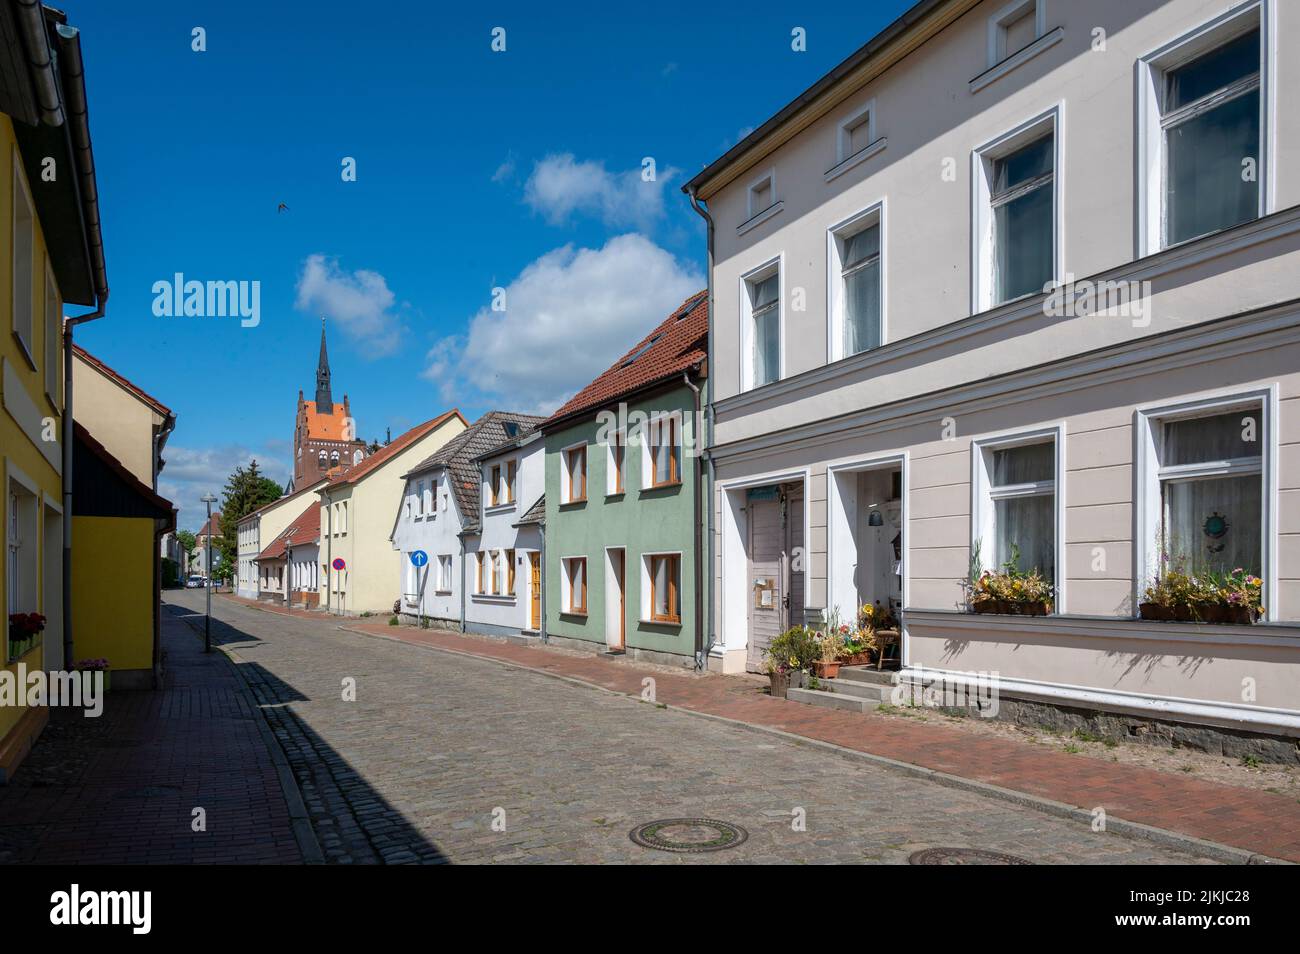 Alemania, Mecklemburgo-Pomerania Occidental, Mar Báltico, Bahía de Pomerania, Isla de Usedom, Ciudad de Usedom, calle Peene Foto de stock